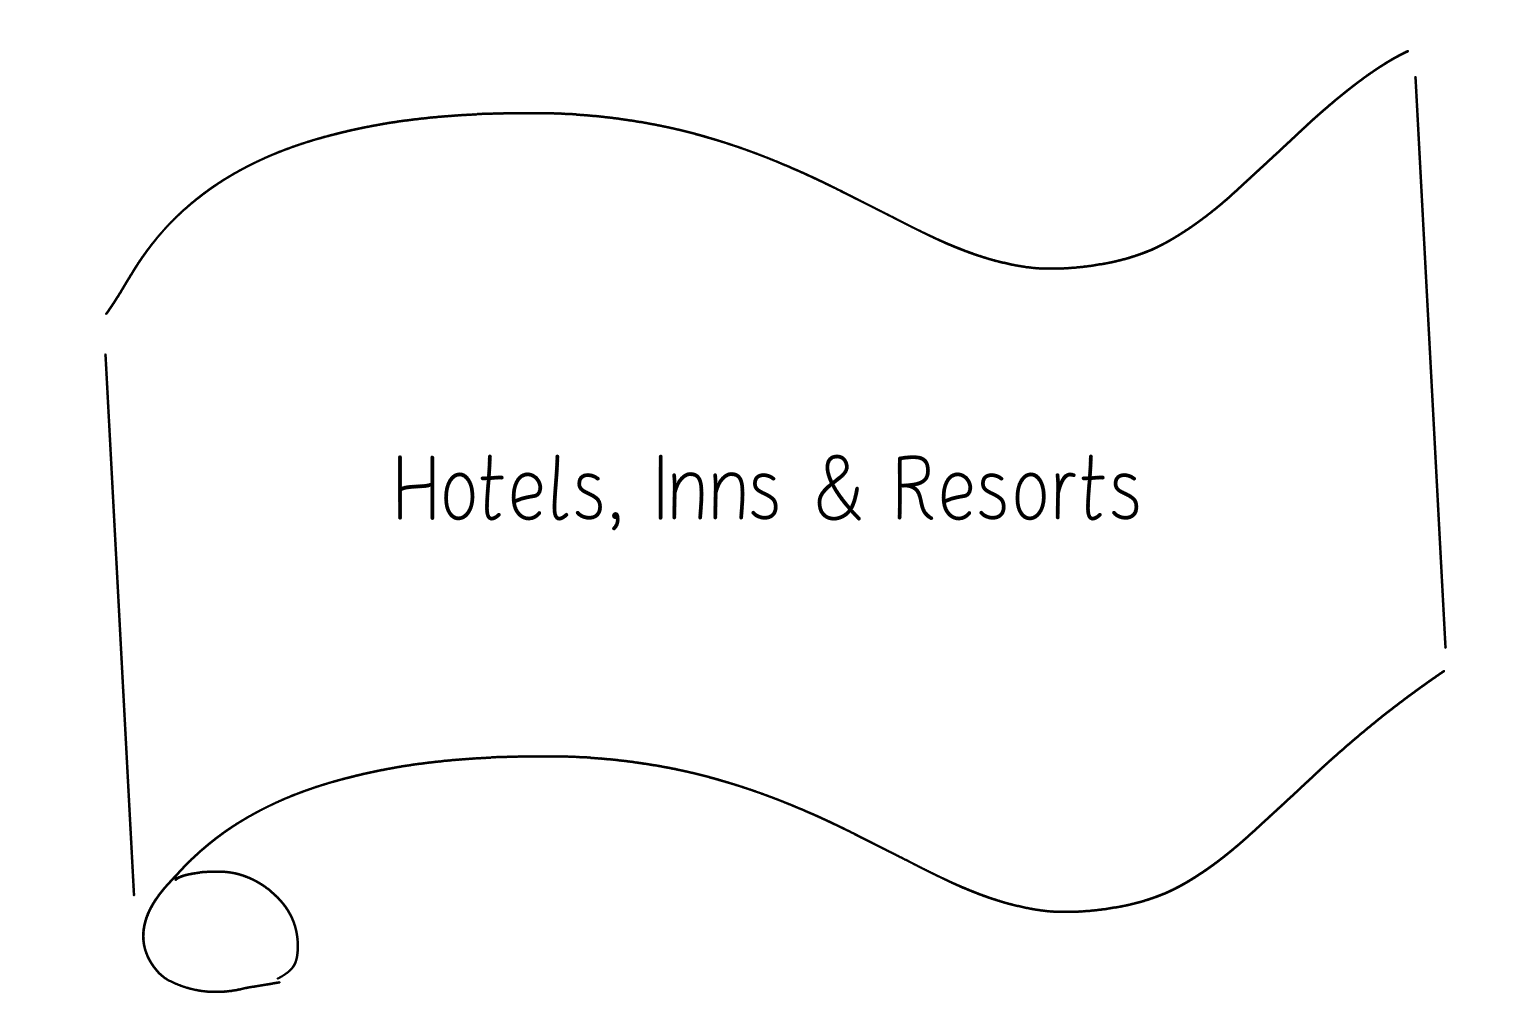 Illustration of Hotels, Inns & Resorts